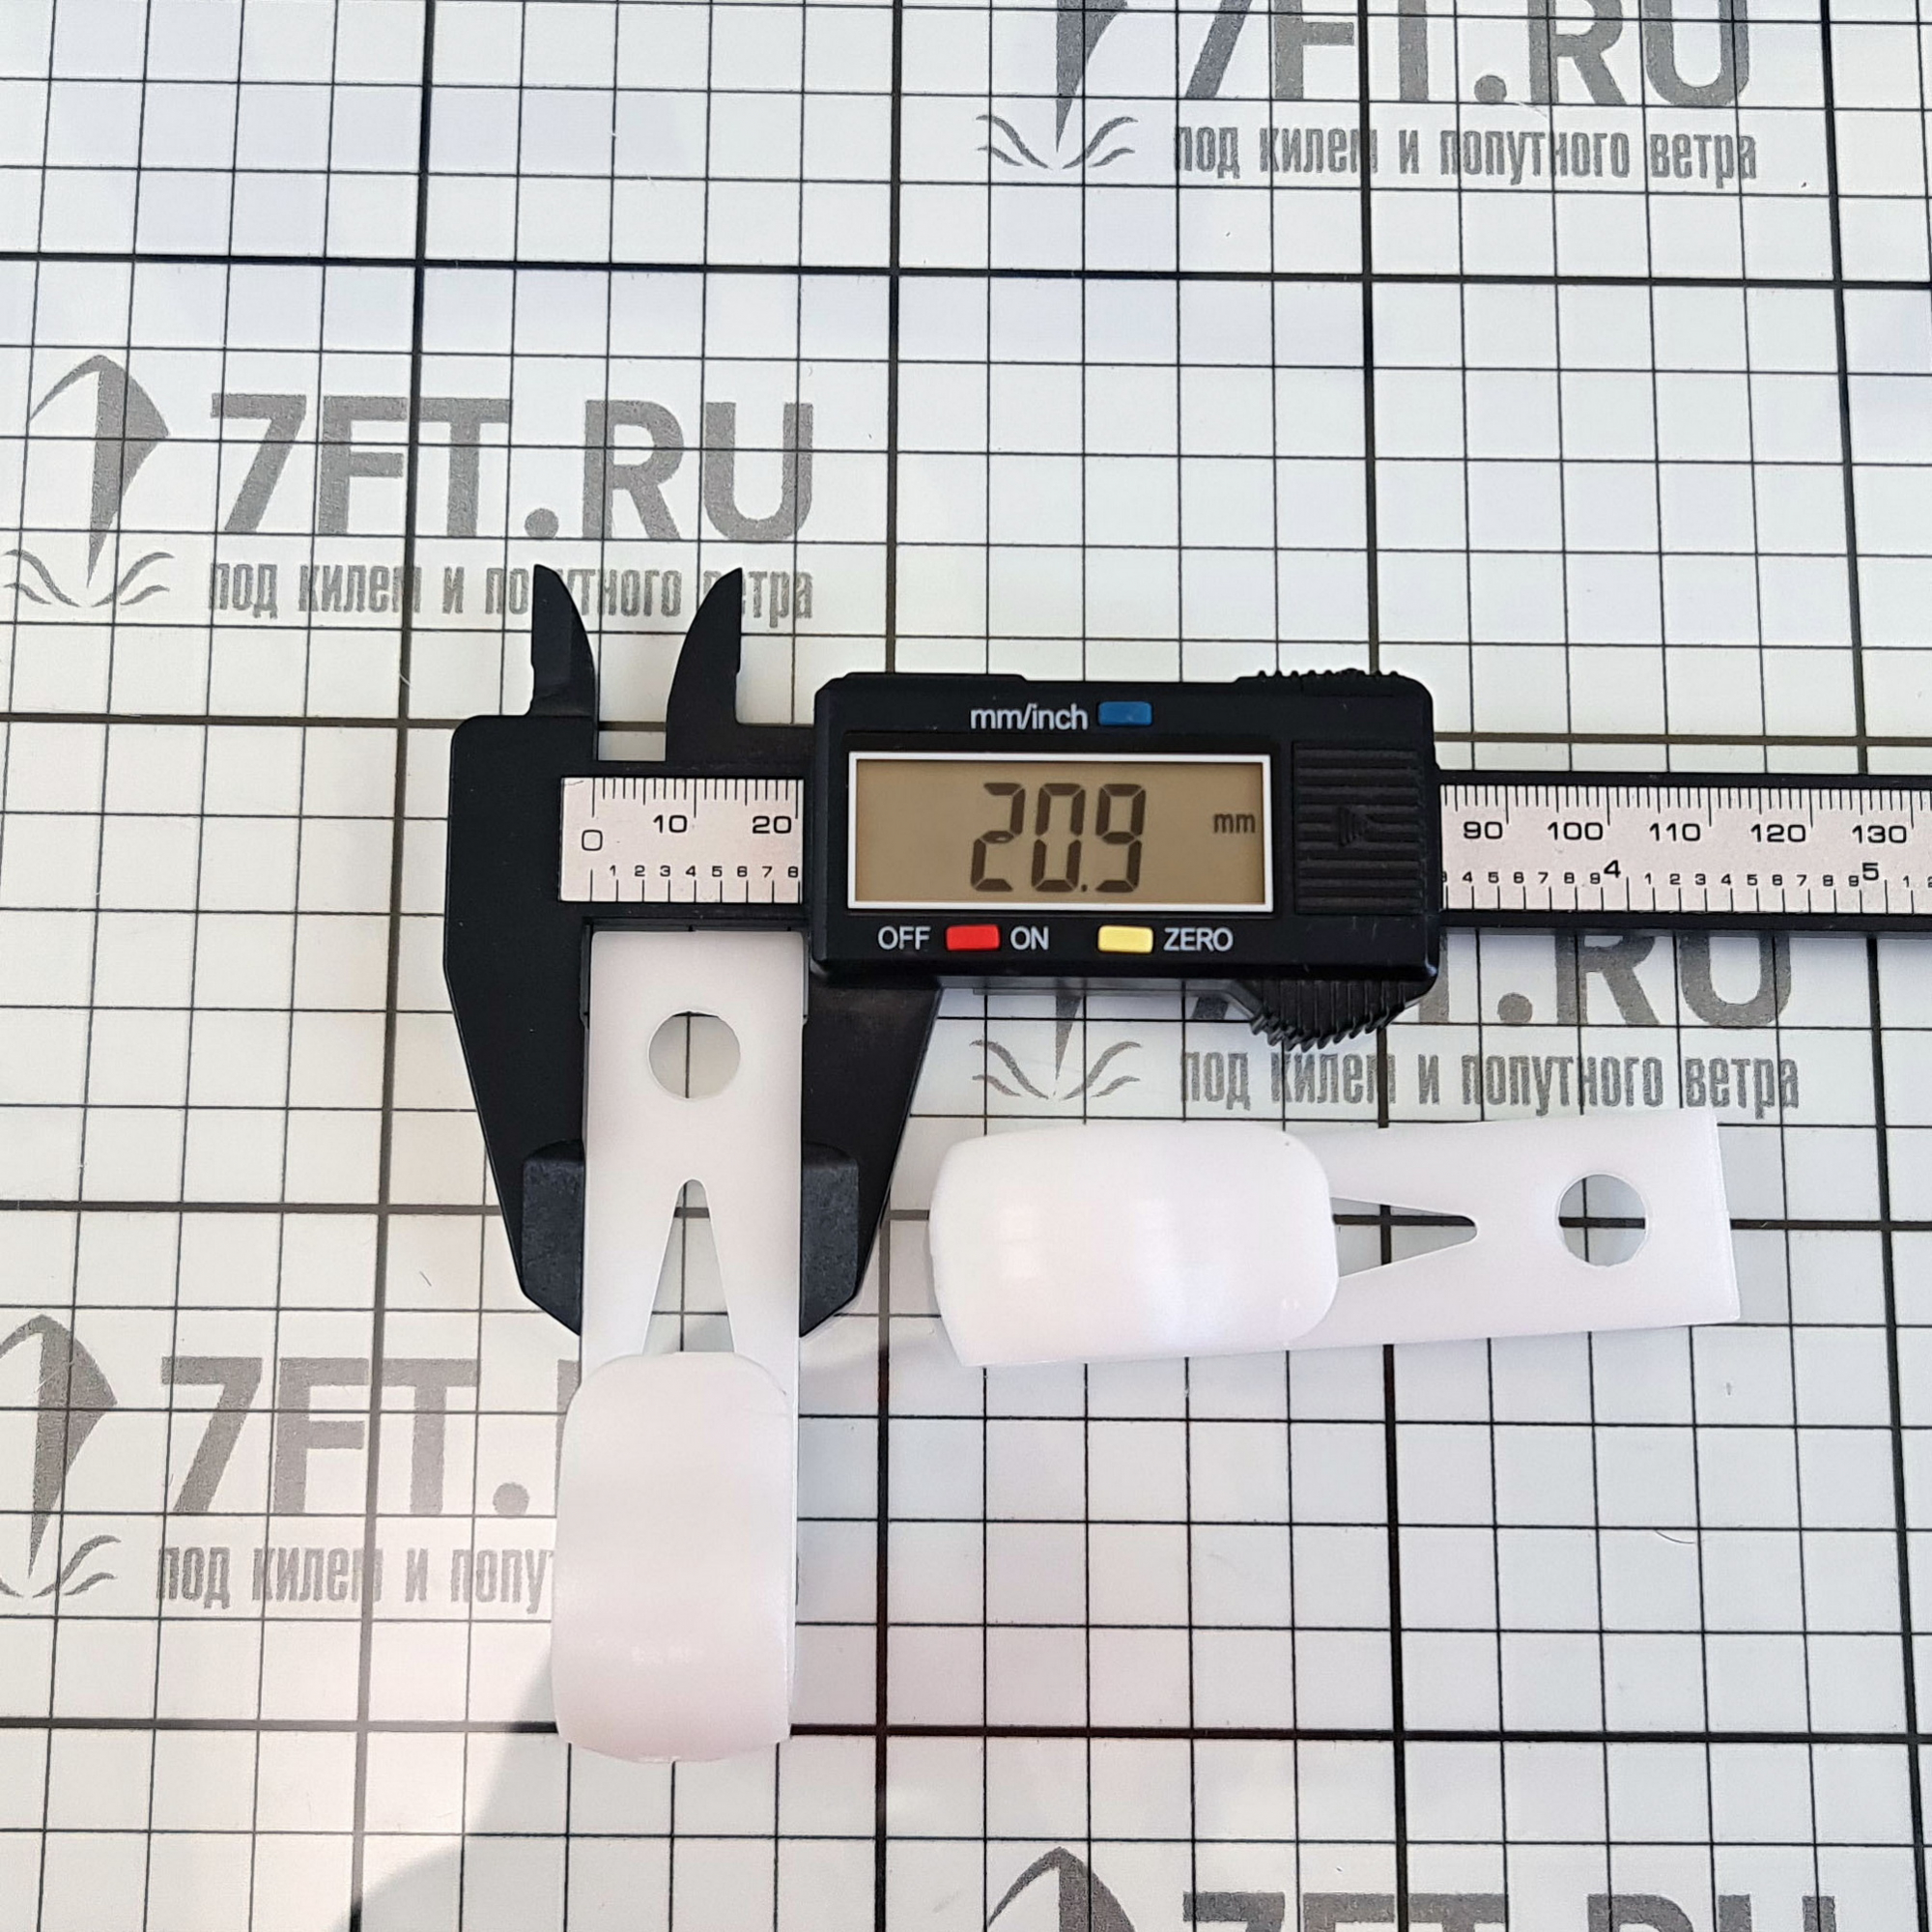 Купить Крепление на релинг пластиковое Trem N5308000 8 - 10 мм 7ft.ru в интернет магазине Семь Футов